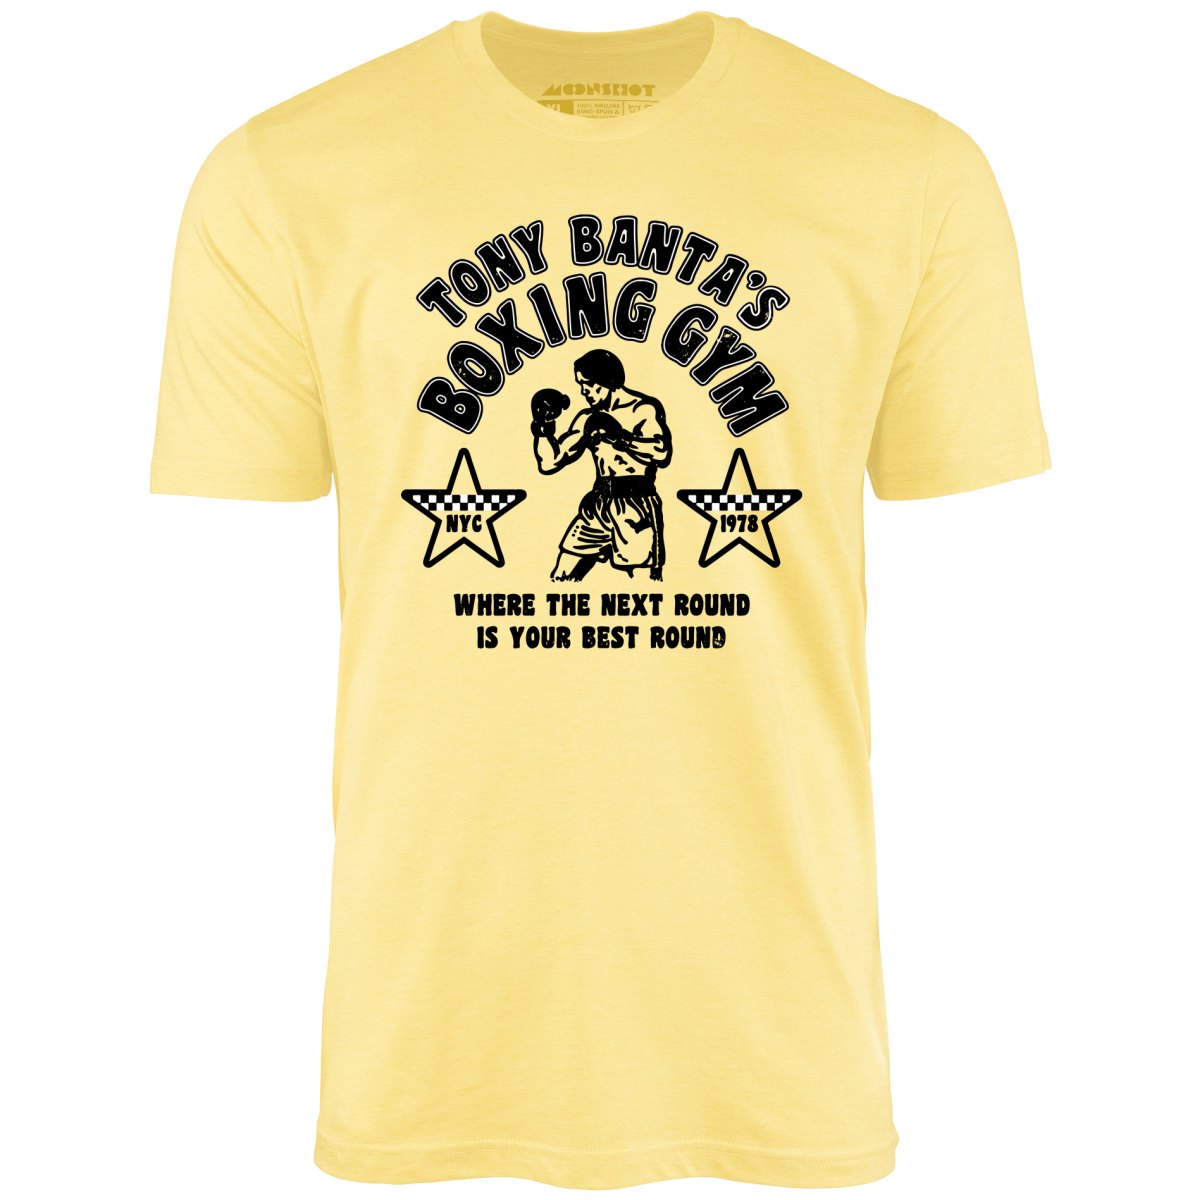 Tony Banta's Boxing Gym - Unisex T-Shirt